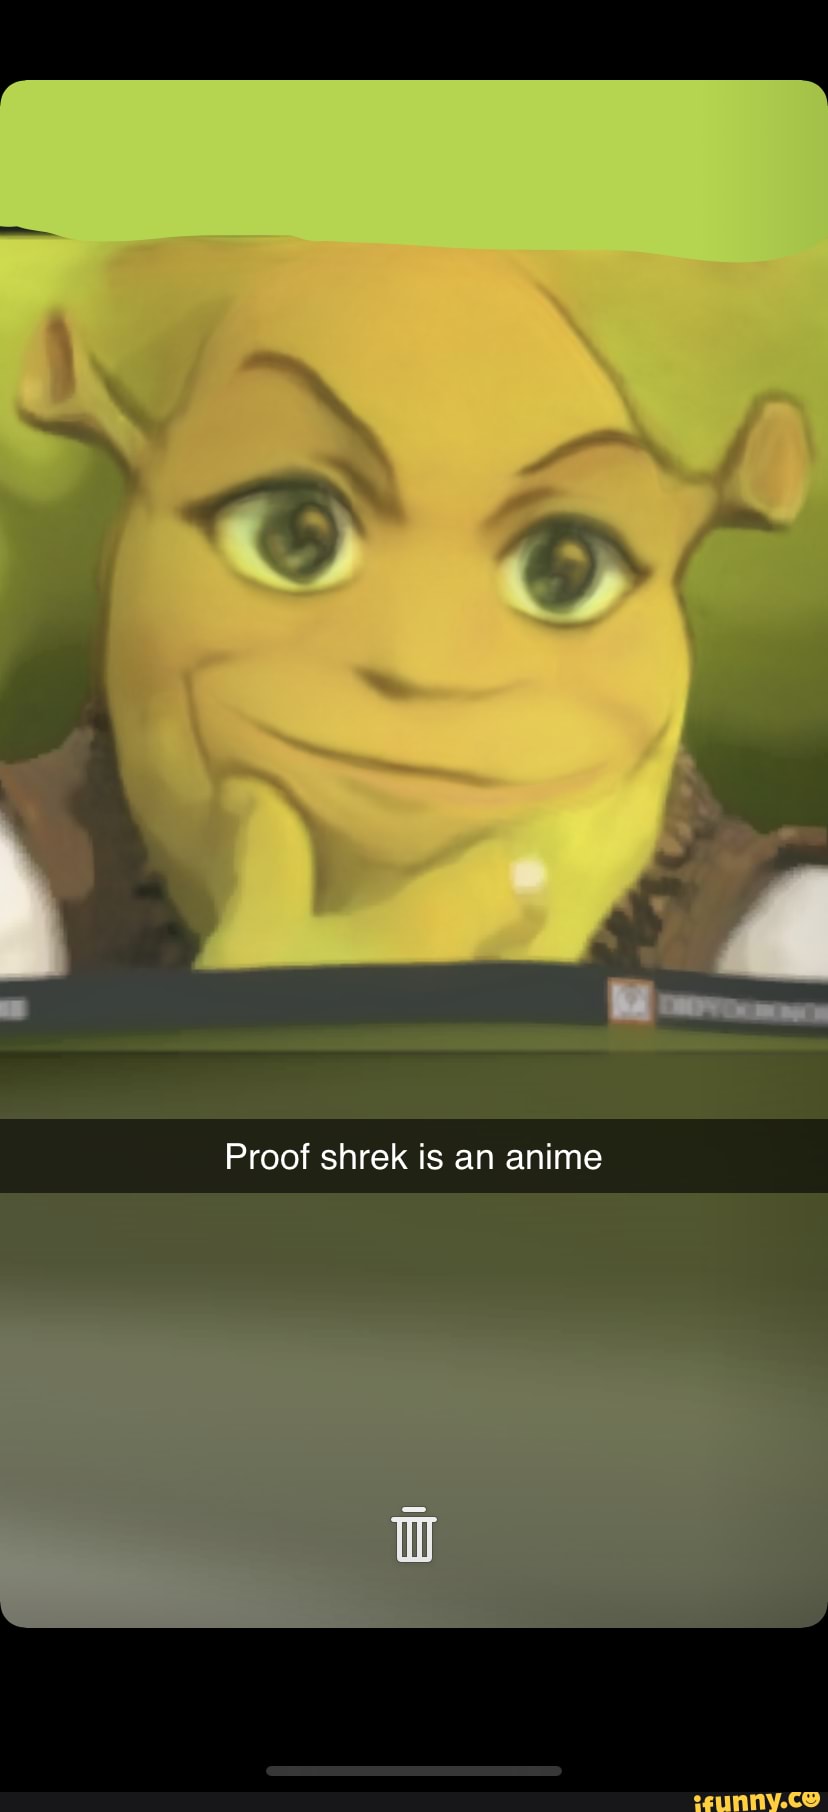 Shrek is my favorite anime